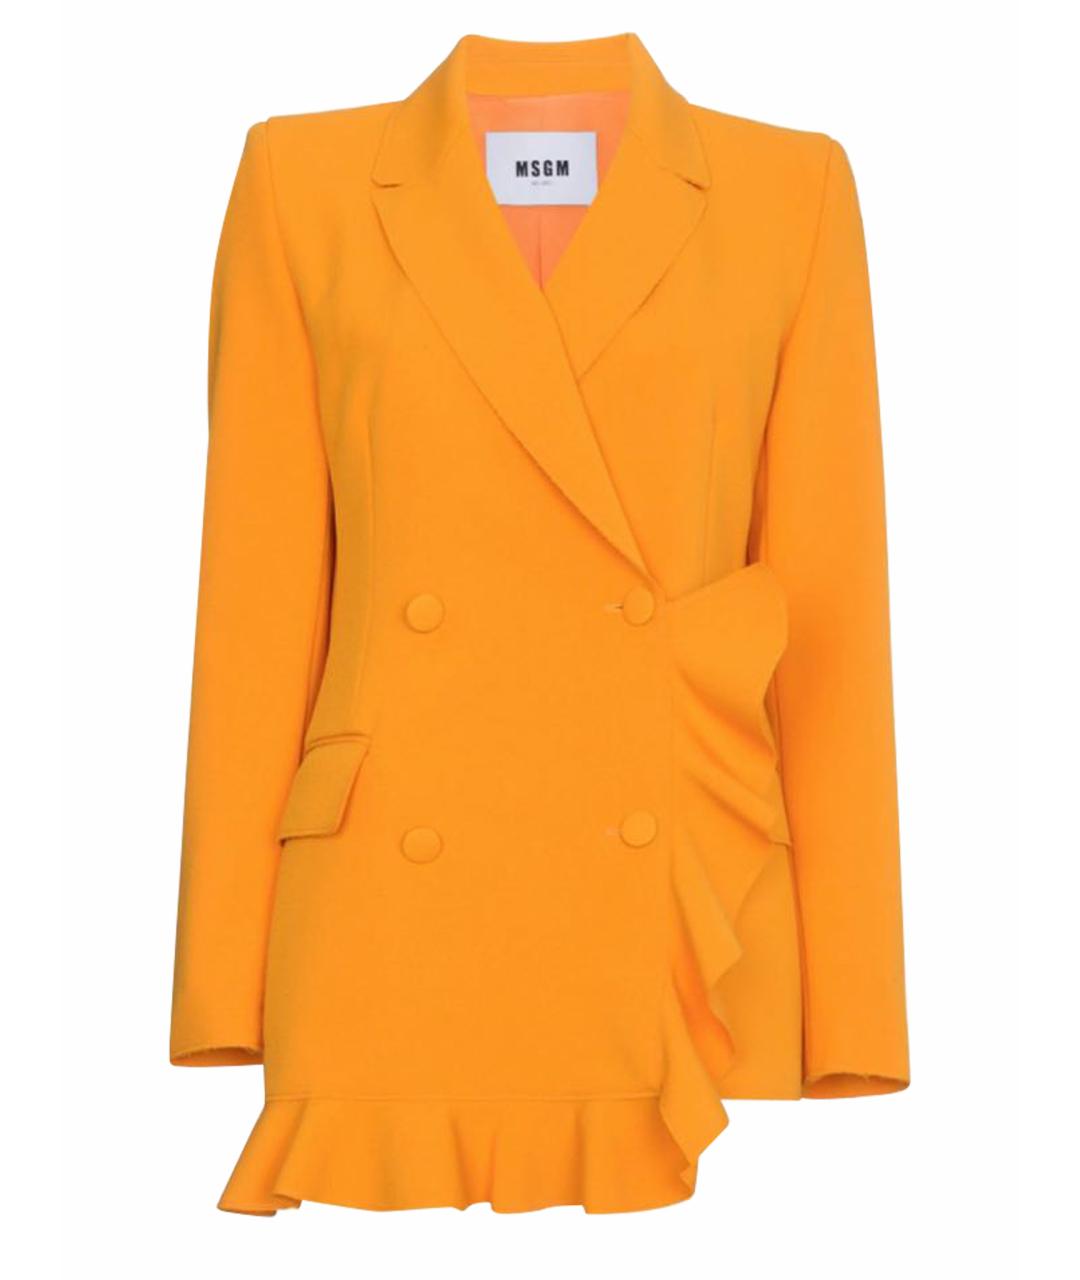 MSGM Оранжевый жакет/пиджак, фото 1